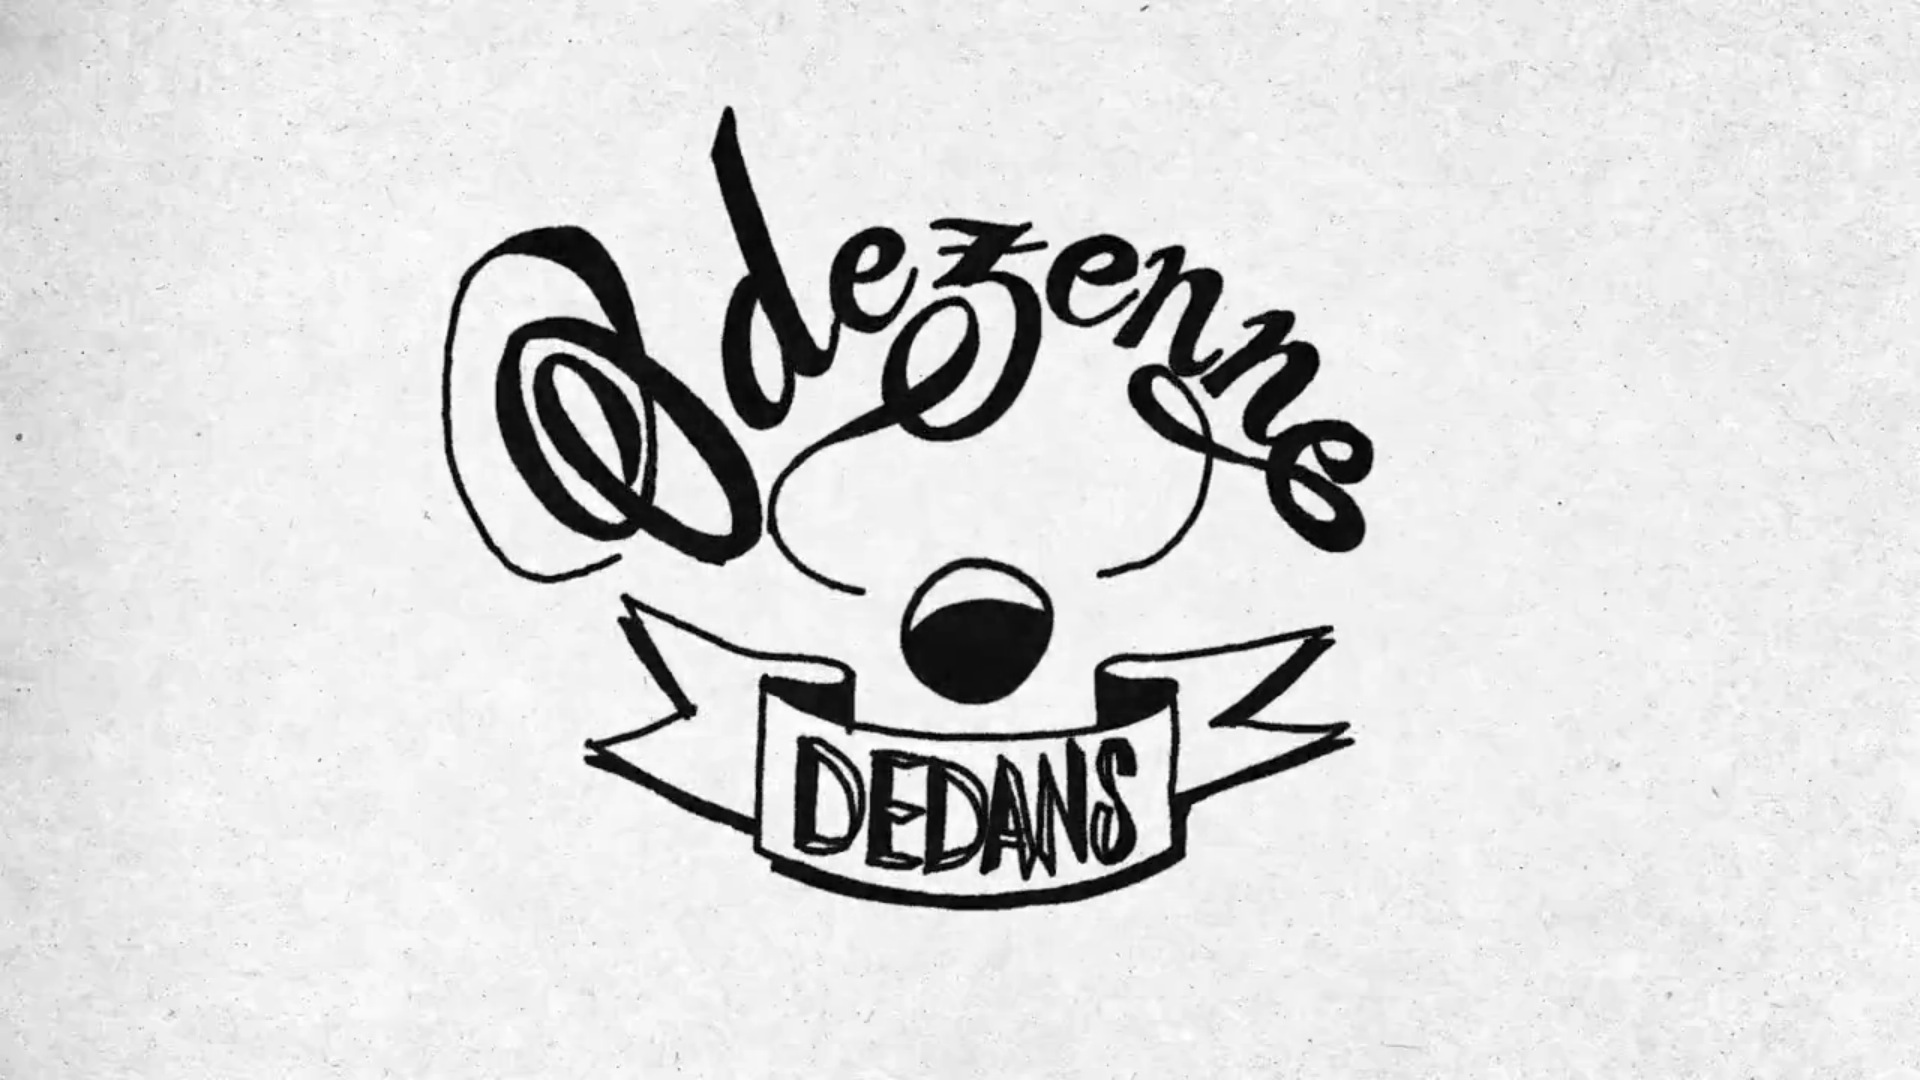 Odezenne - Dedans6